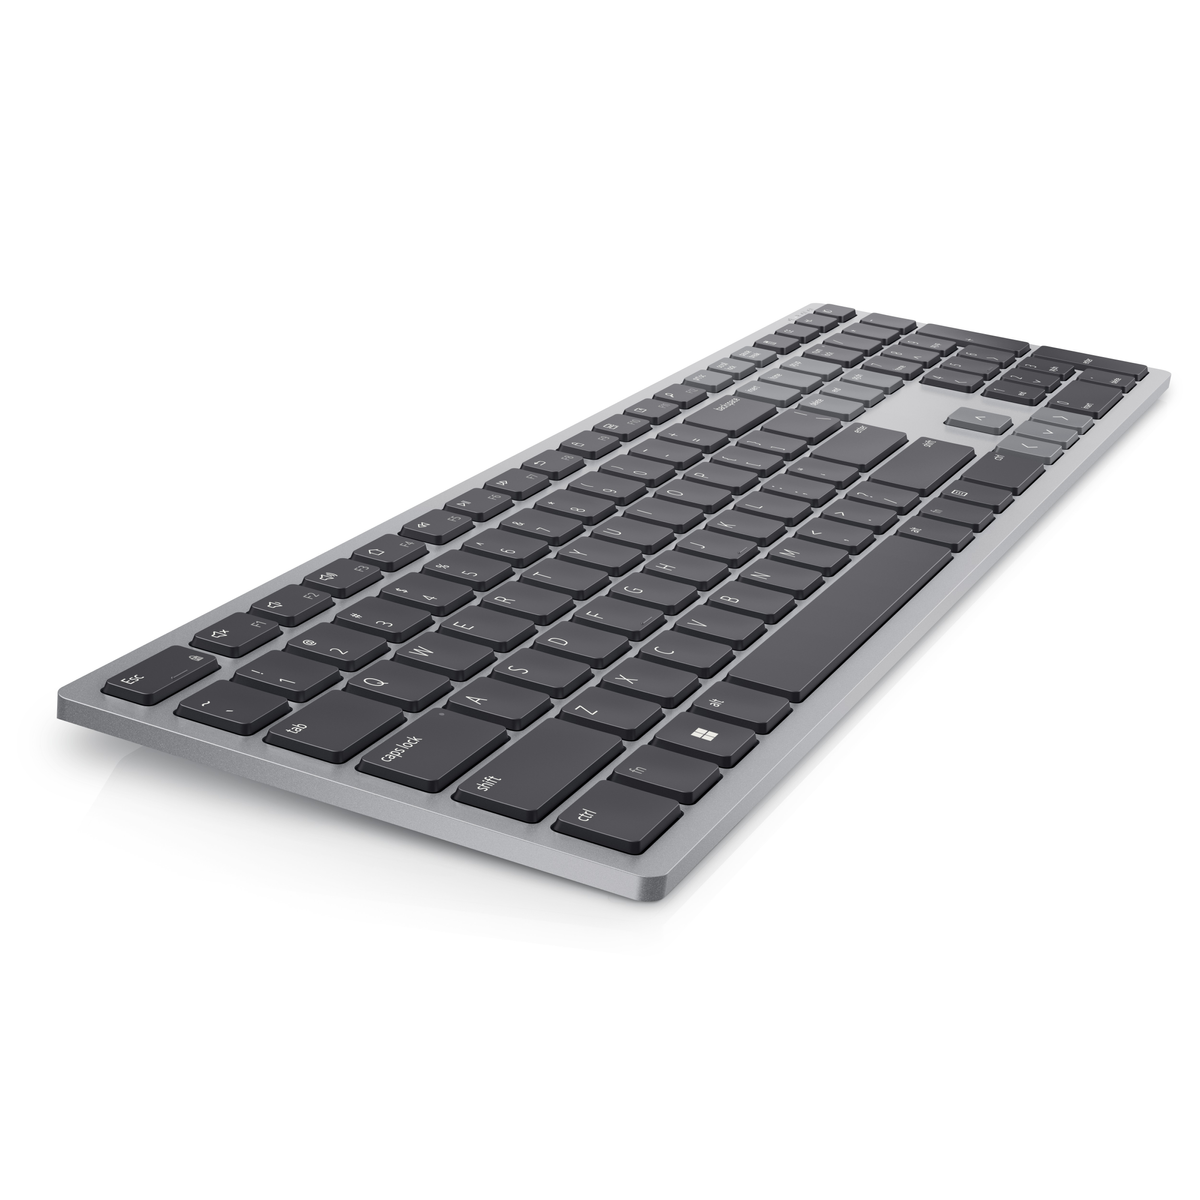 DELL KB700-GY-R-UK, Tastatur